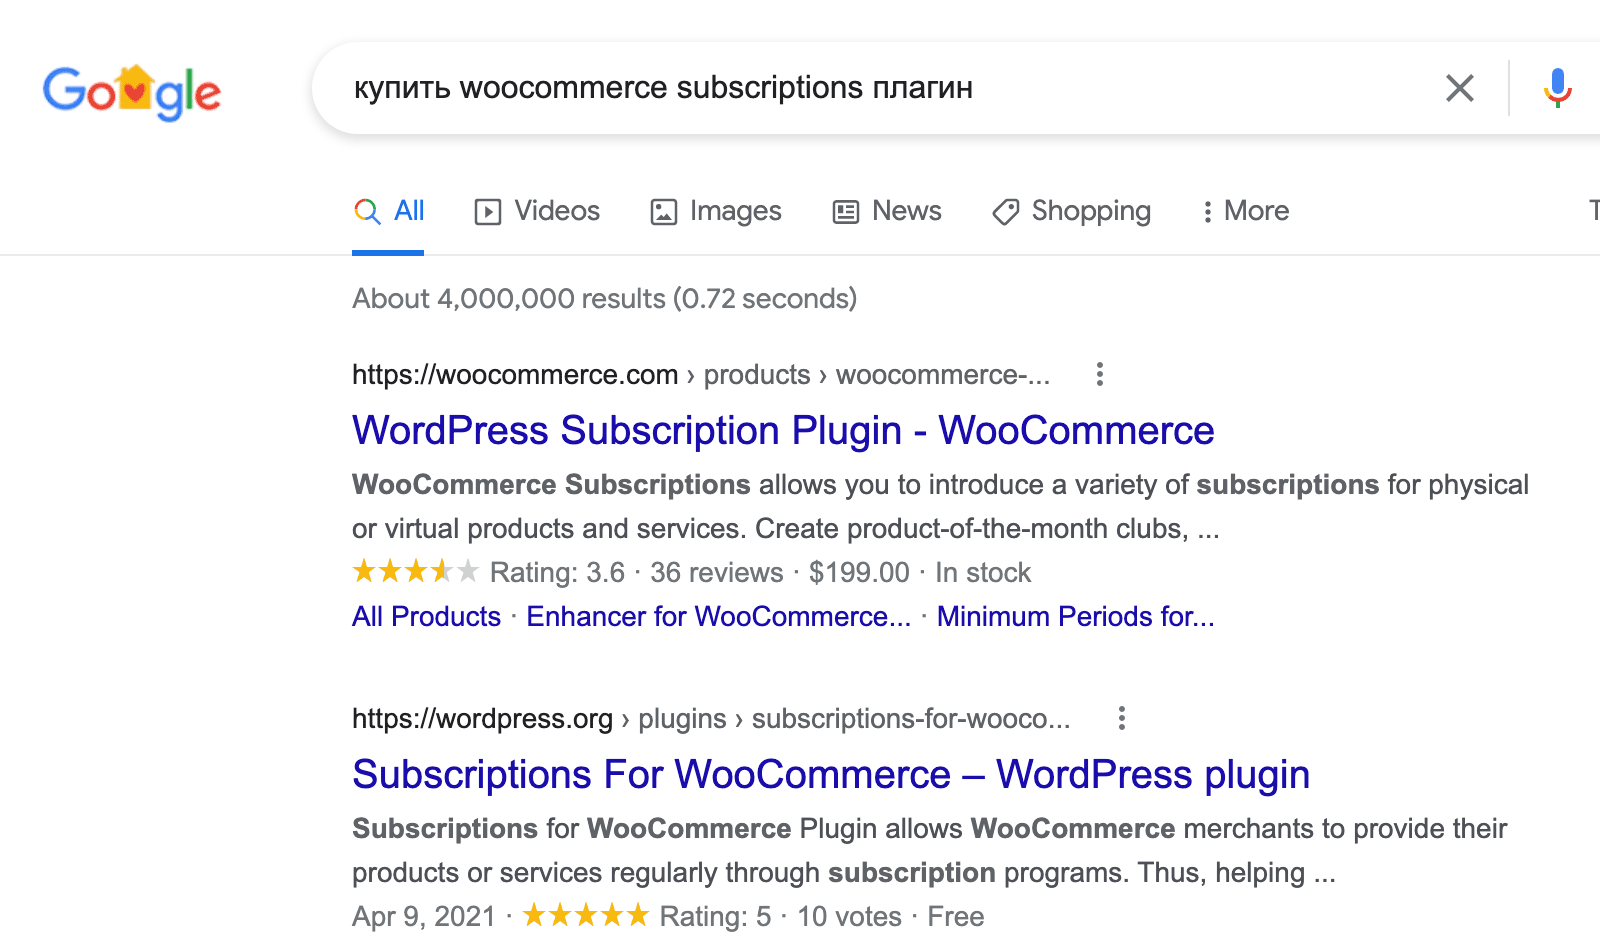 микроразметка товара WooCommerce в результатах поиска